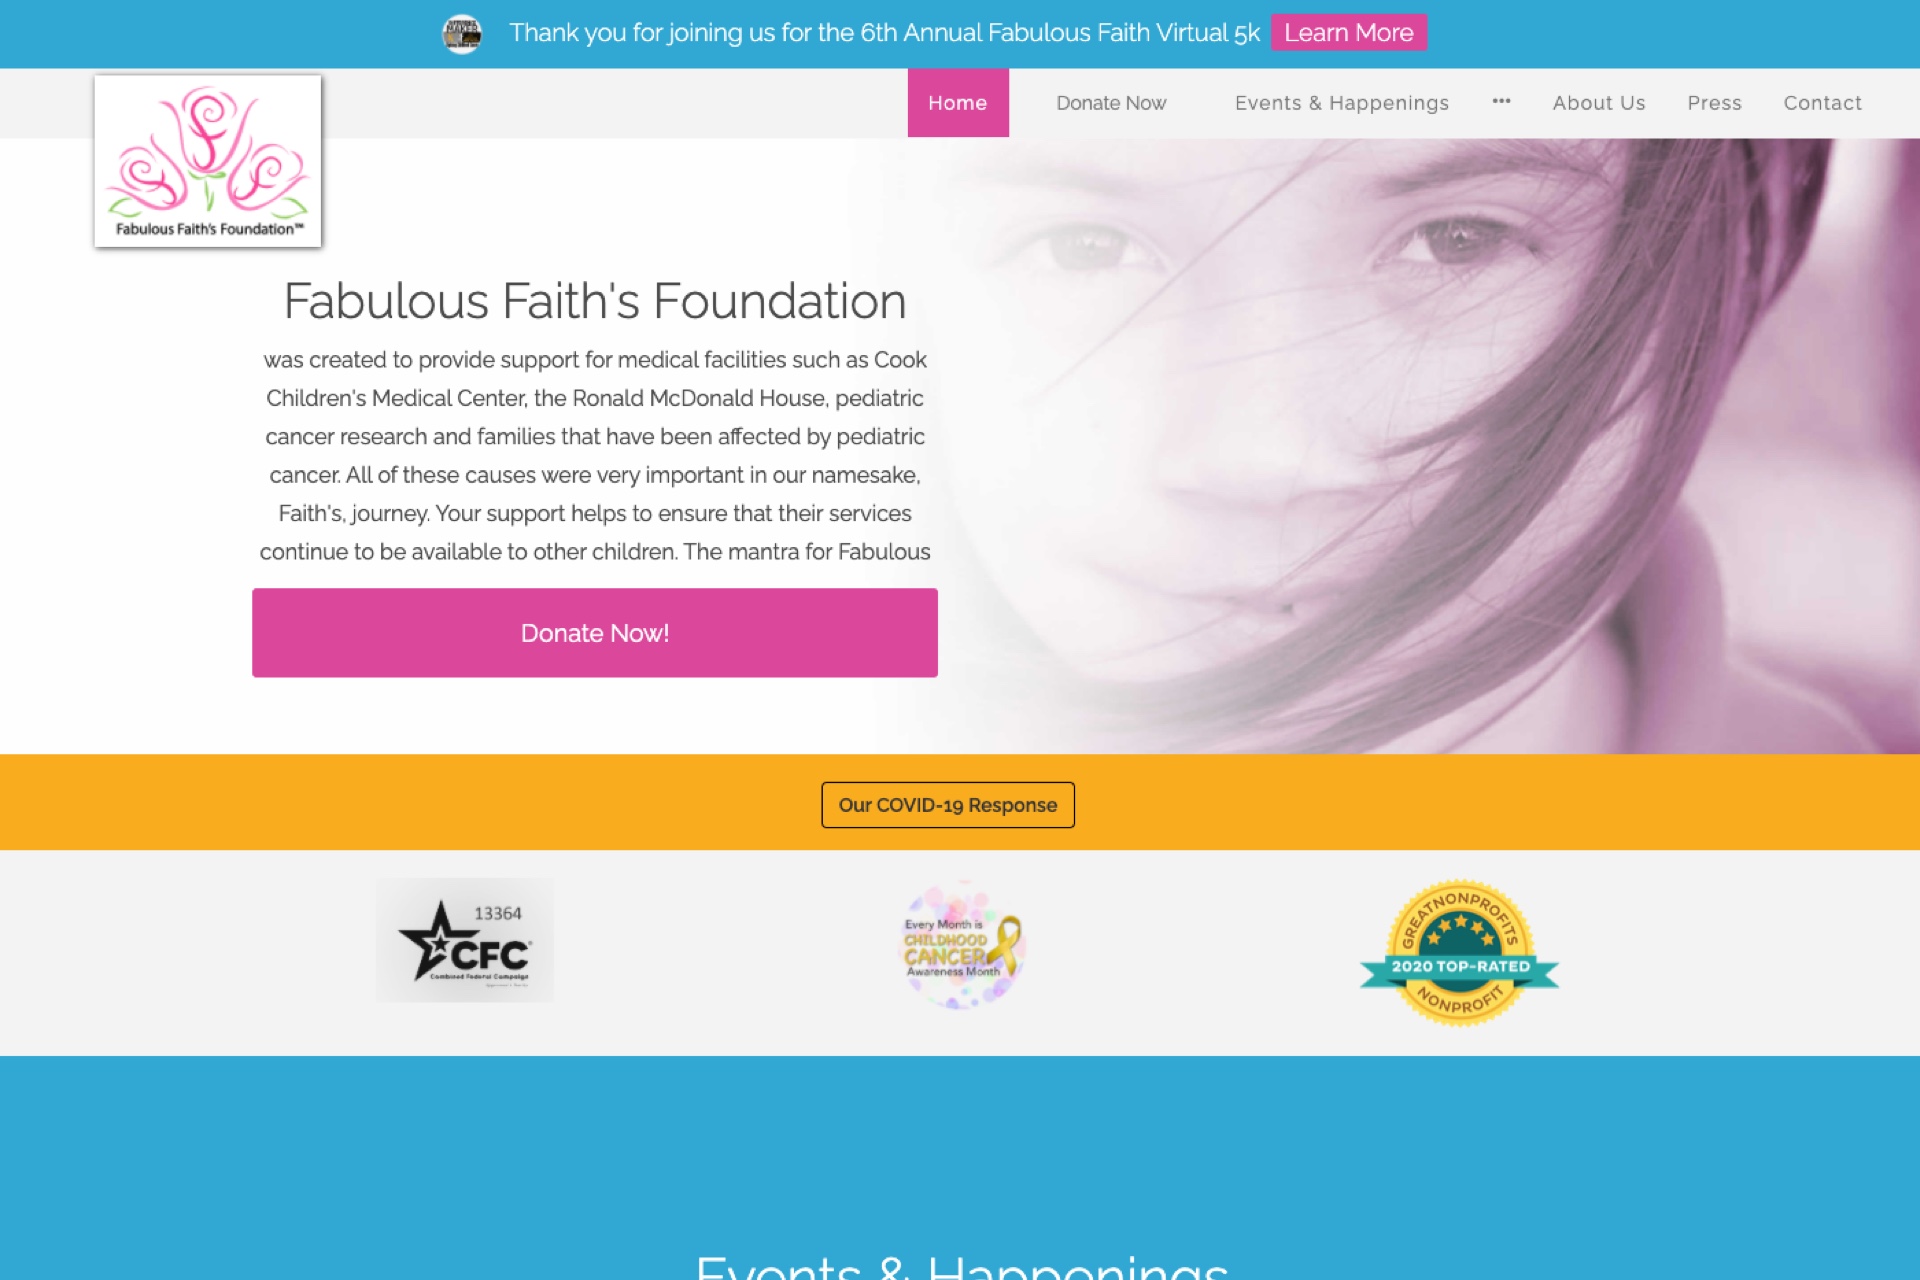 Fabulous Faith's Foundation